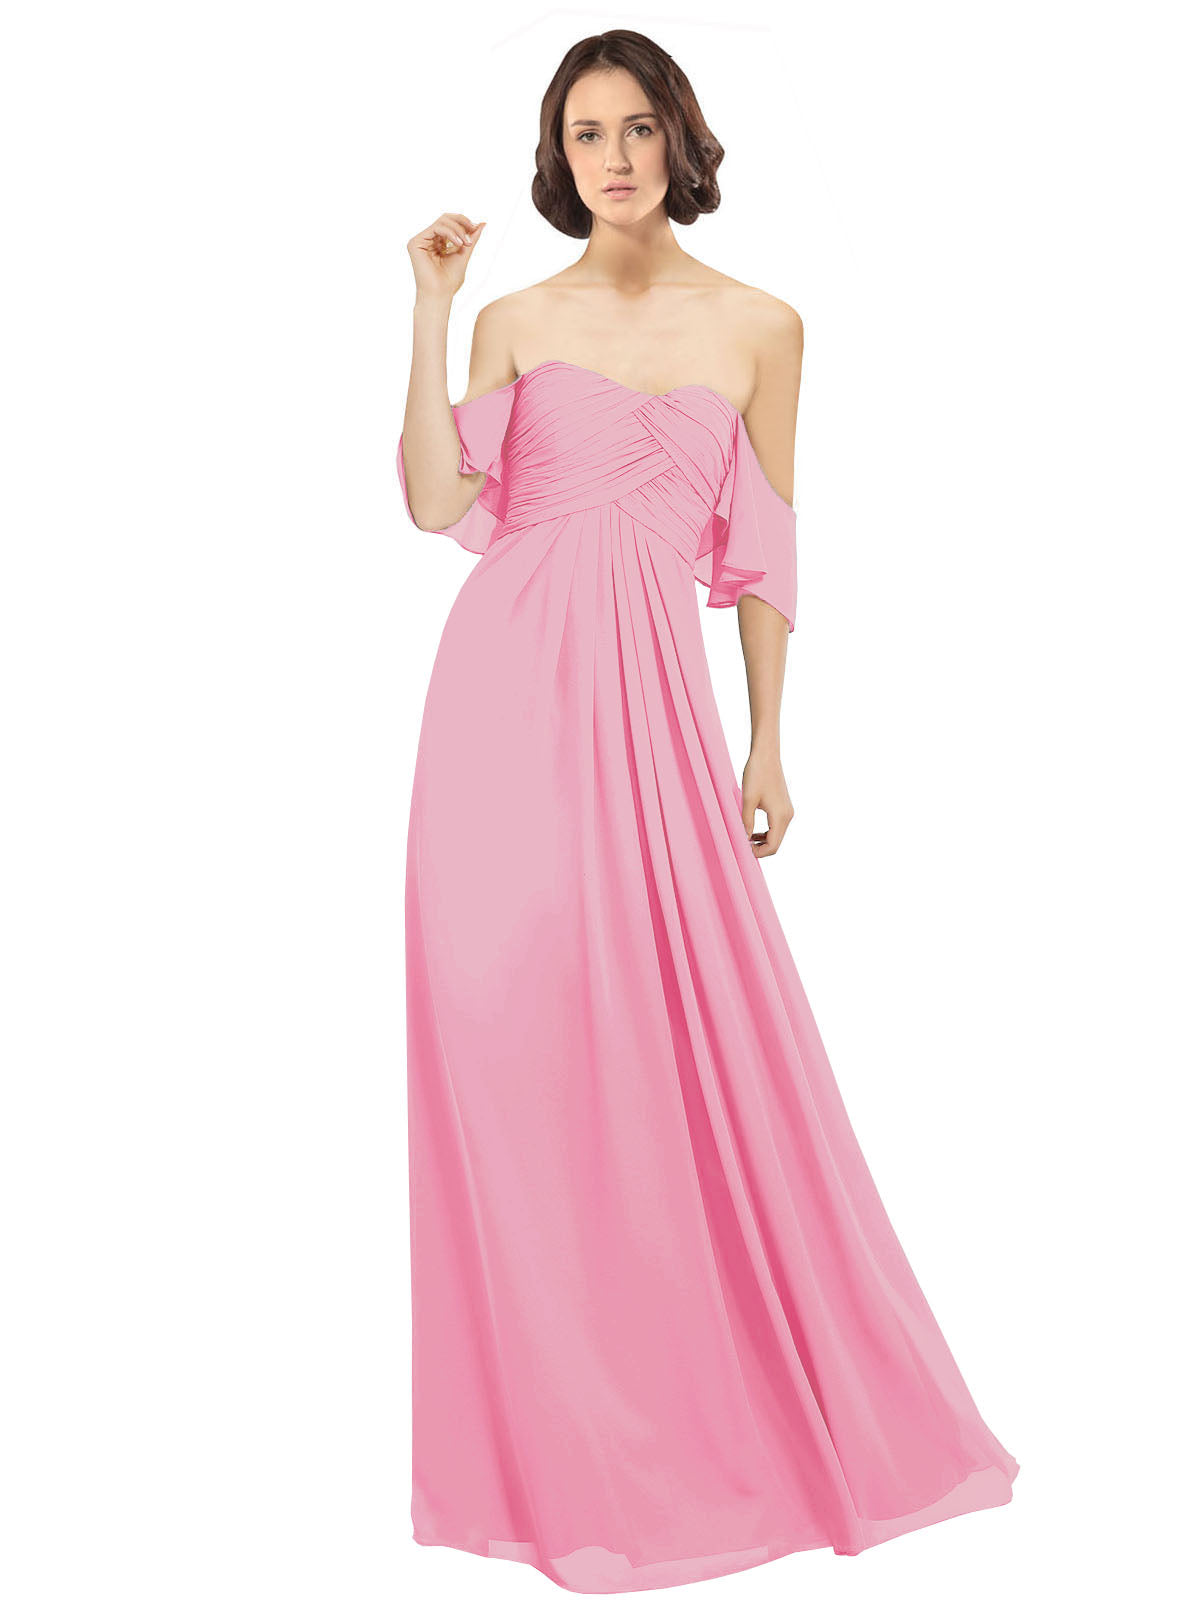 Hot Pink A-Line Off the Shoulder Off the Shoulder Long Bridesmaid Dress Katherine